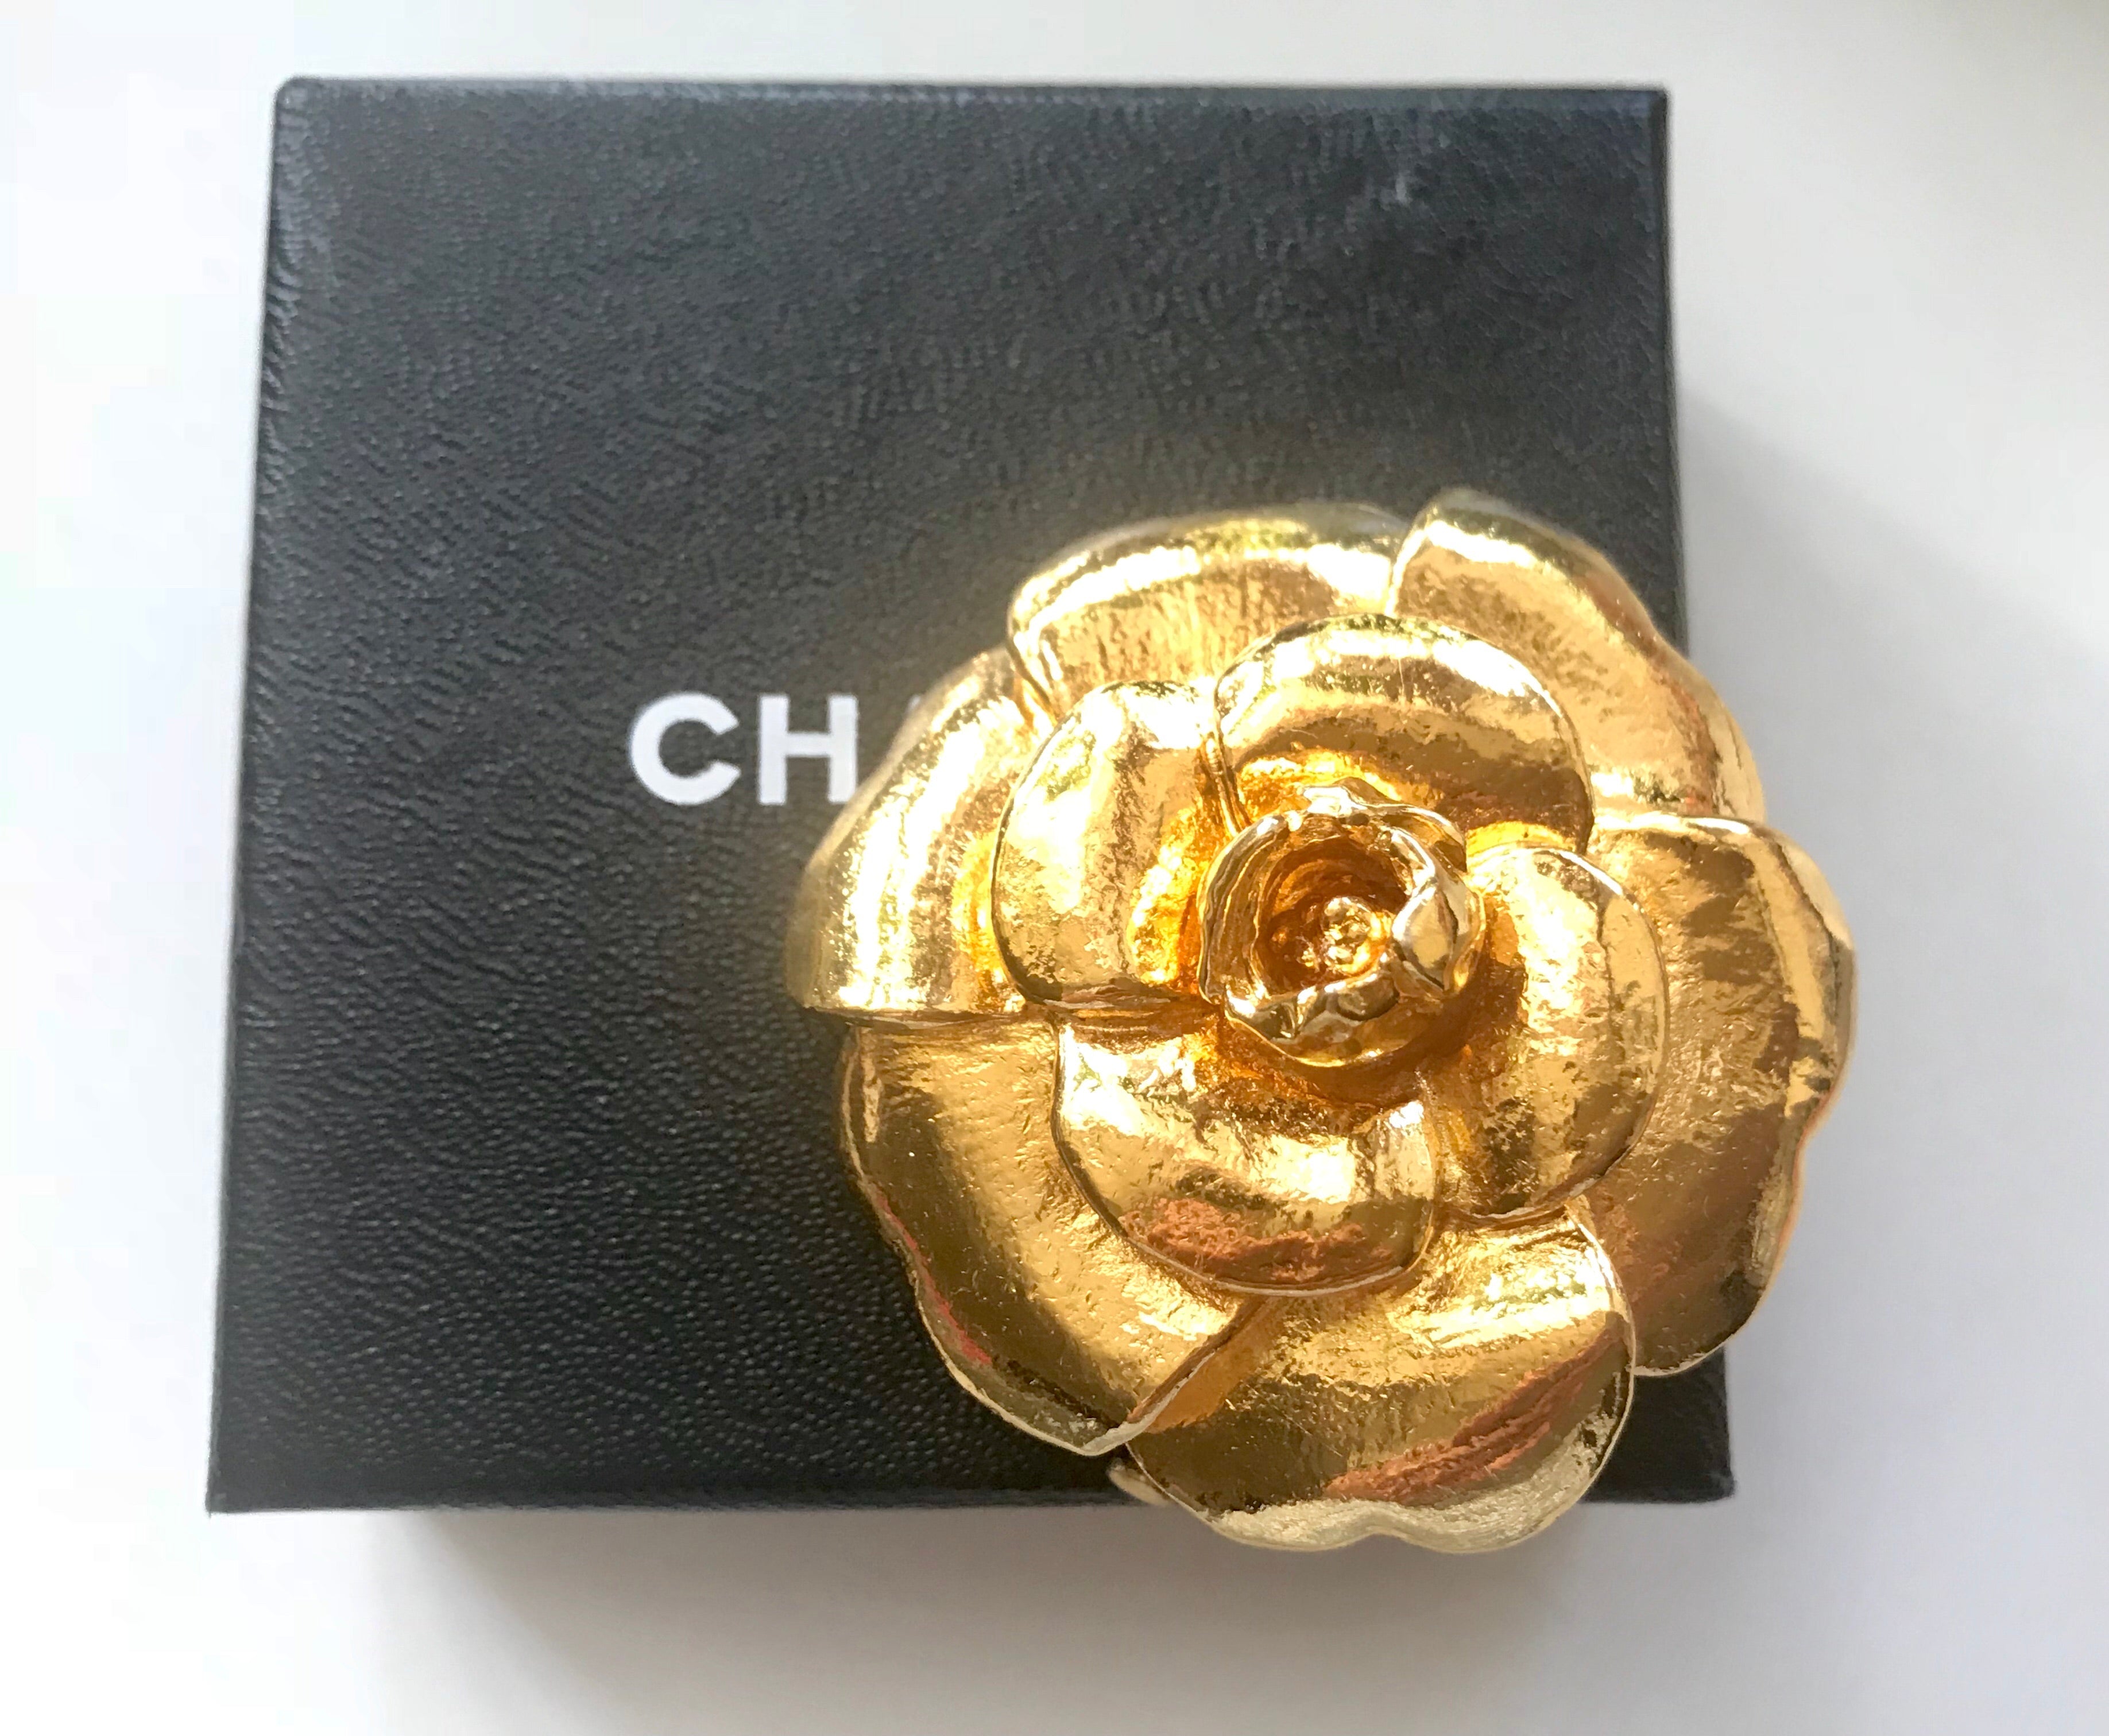 chanel rose flower